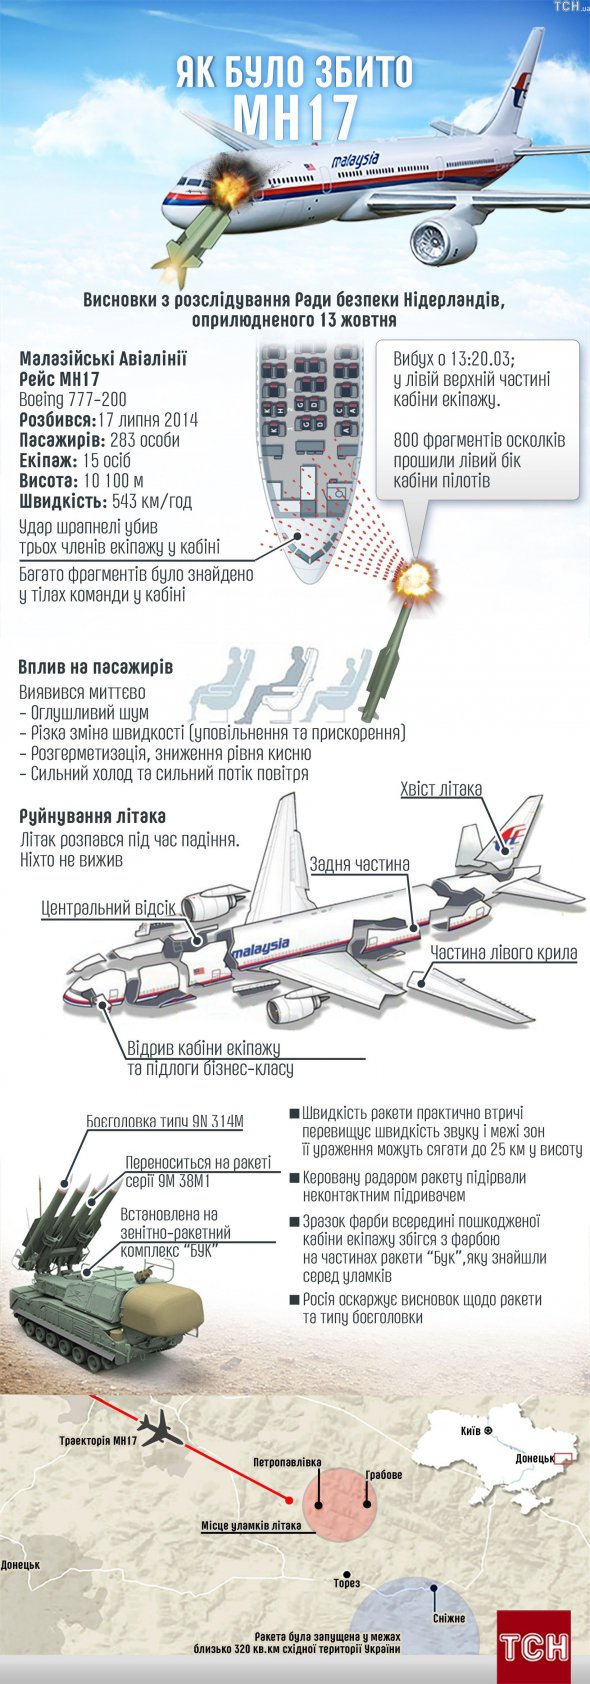 Схема збиття літака МН 17 з російської ЗРК Бук